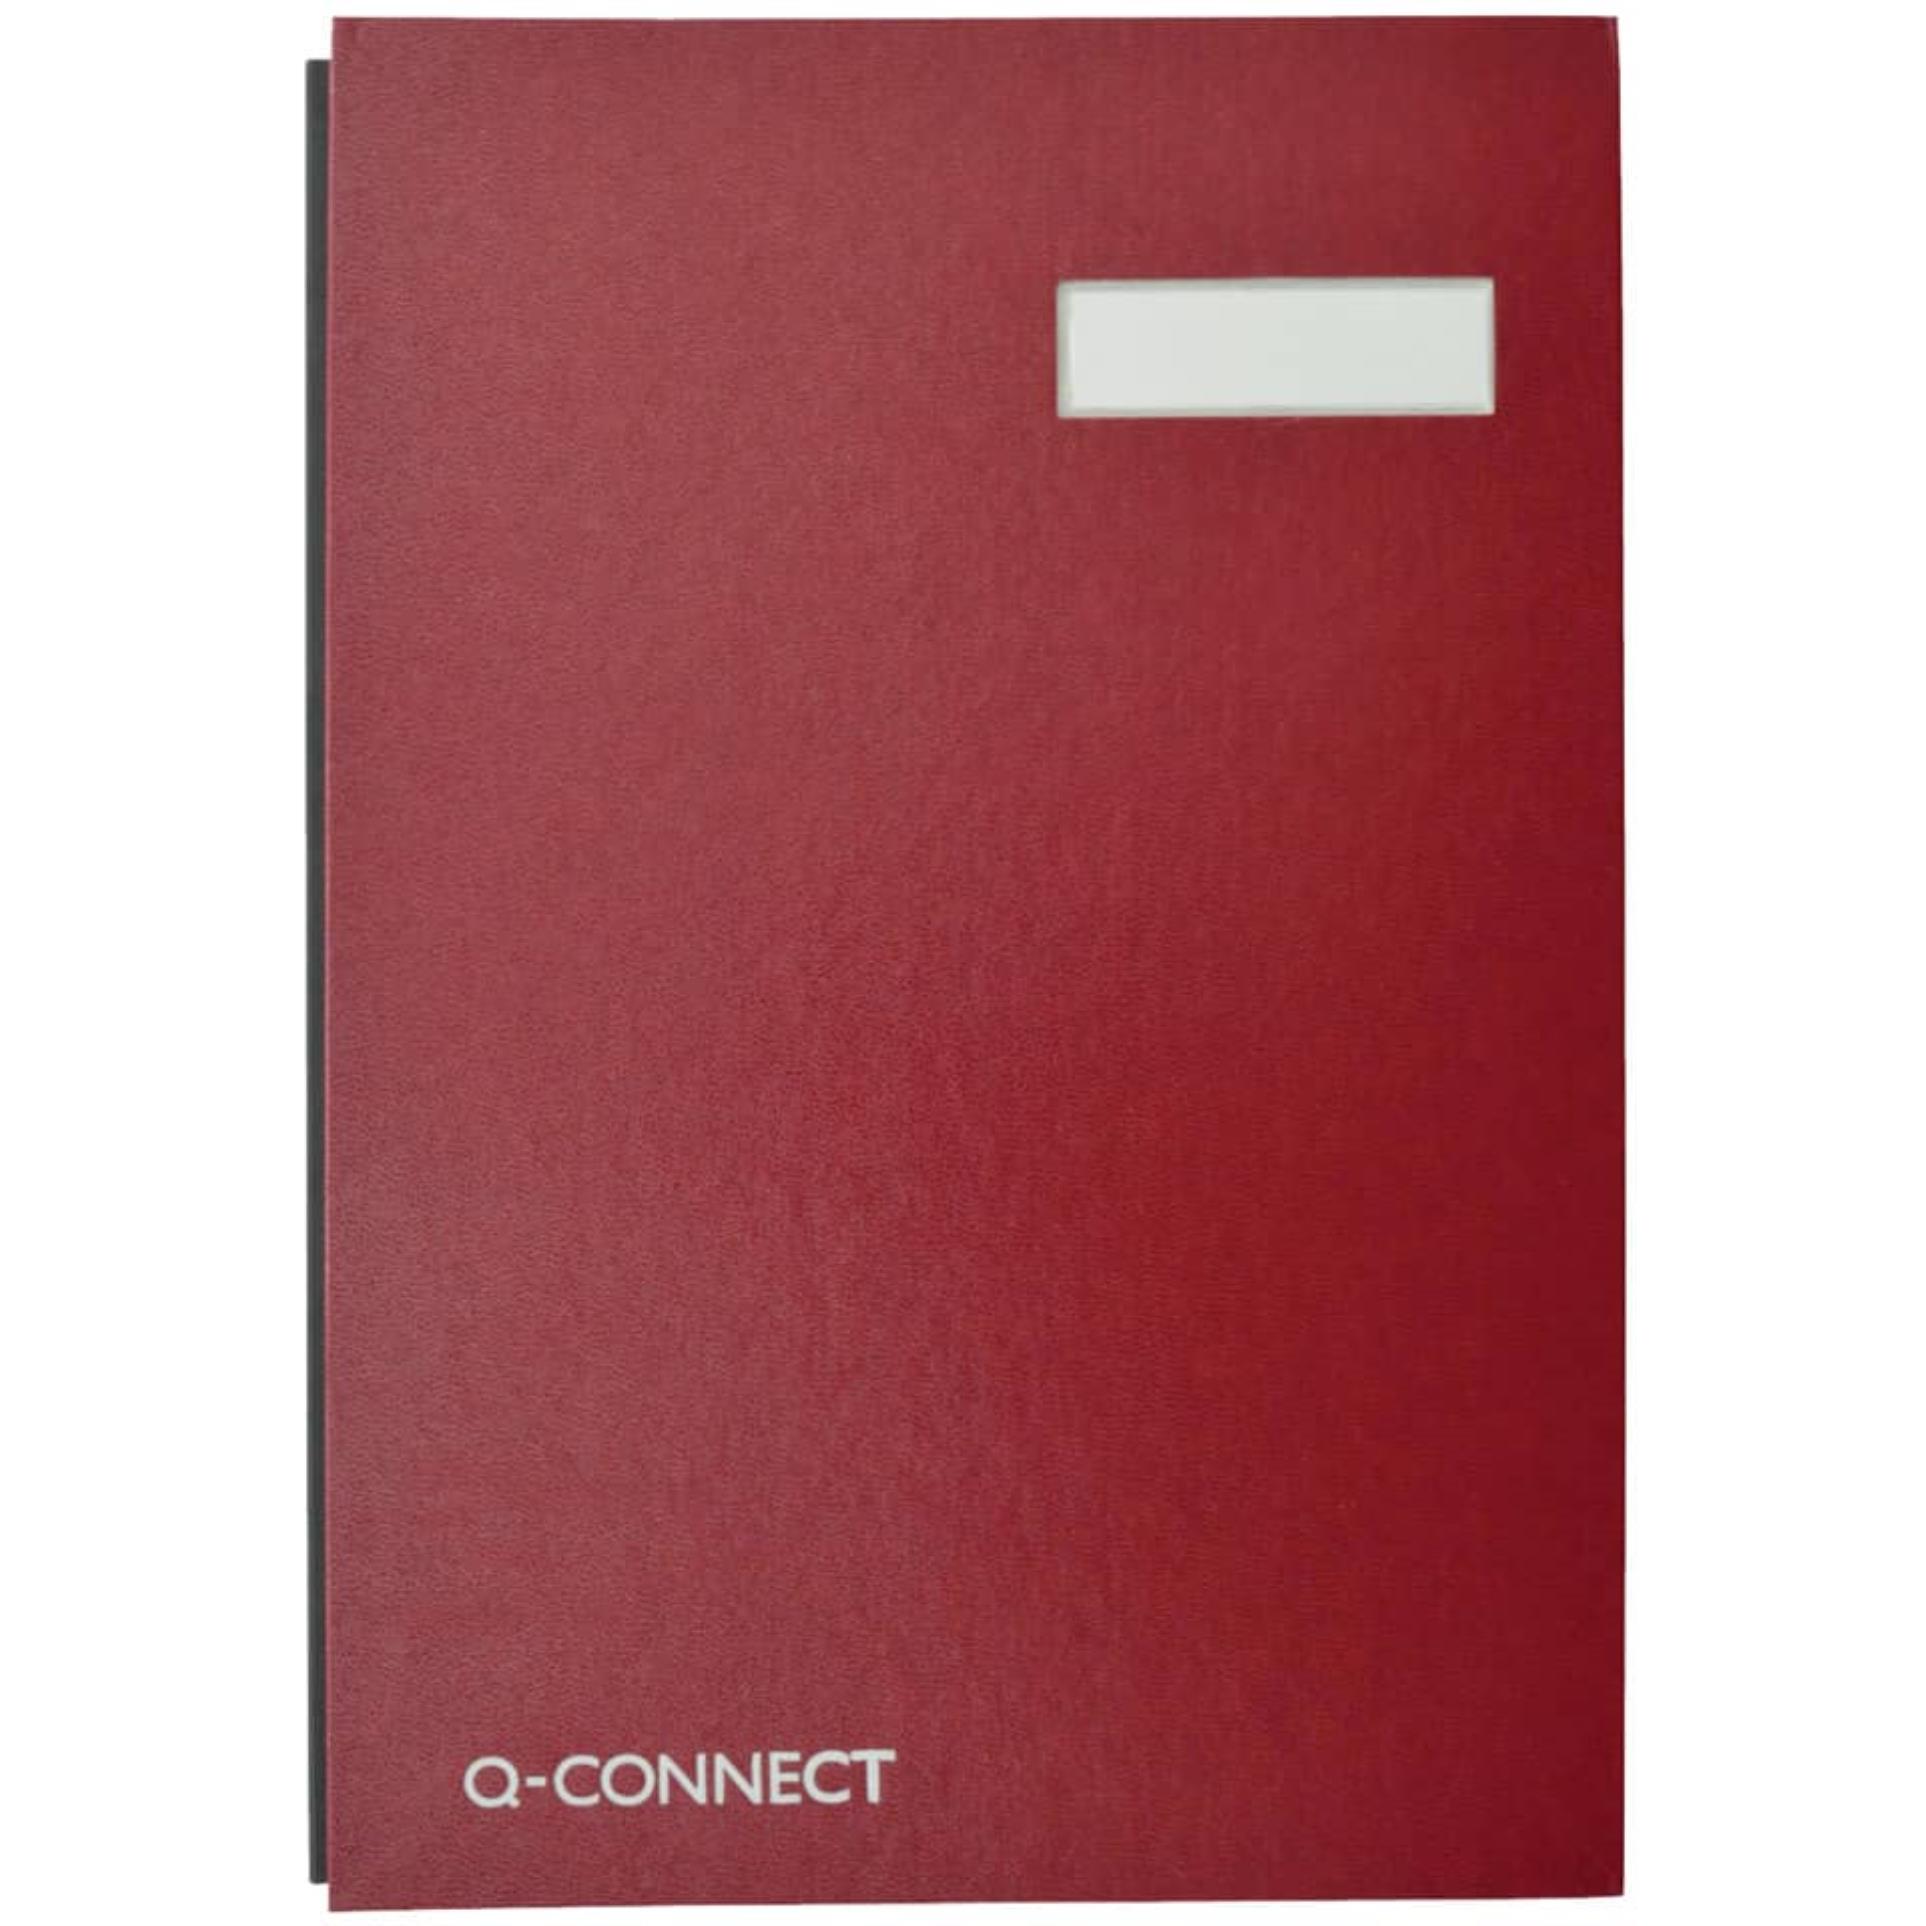 Podpisová kniha Q-Connect, A4, 20 listů, červená